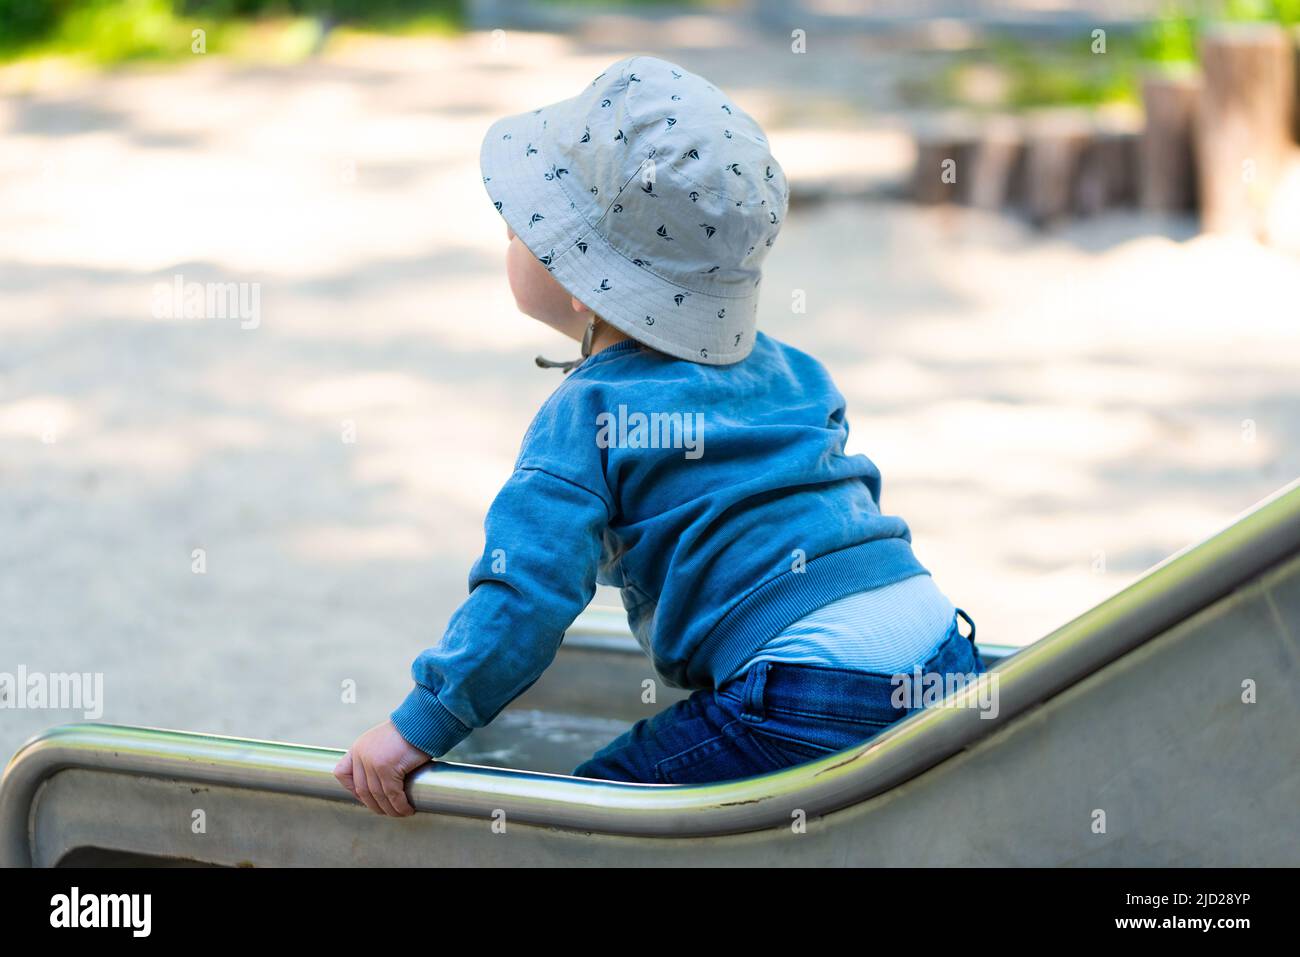 vista posteriore del bambino sullo scivolo, ragazzo di un anno che usa lo scivolo sul parco giochi Foto Stock